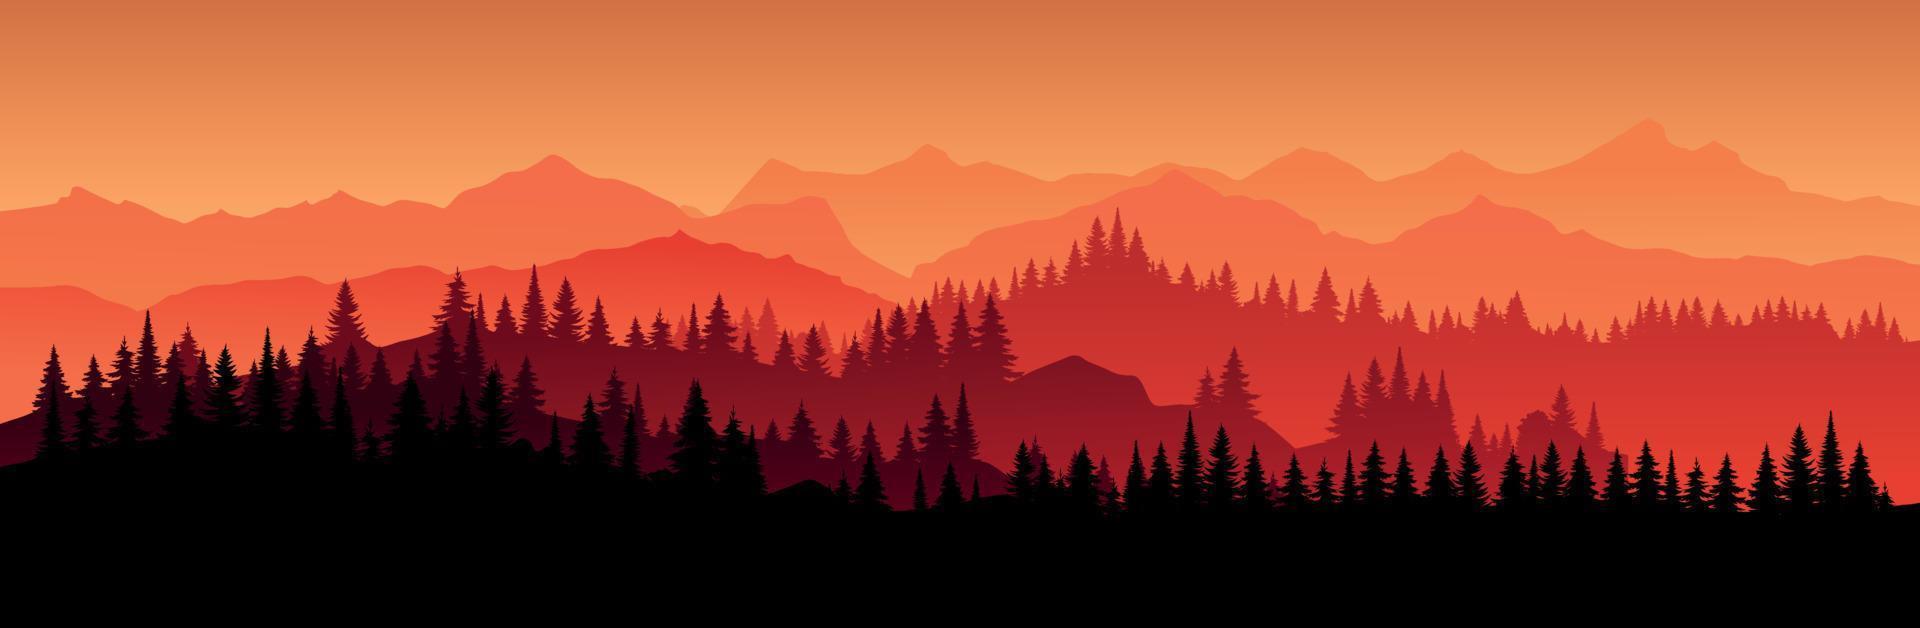 paysage horizontal rouge vectoriel avec brouillard, sapin de noël forestier, épinette, sapin et lumière du soleil du matin. illustration de la silhouette de la vue panoramique, de la brume et des montagnes de silhouettes. feu dans les bois.